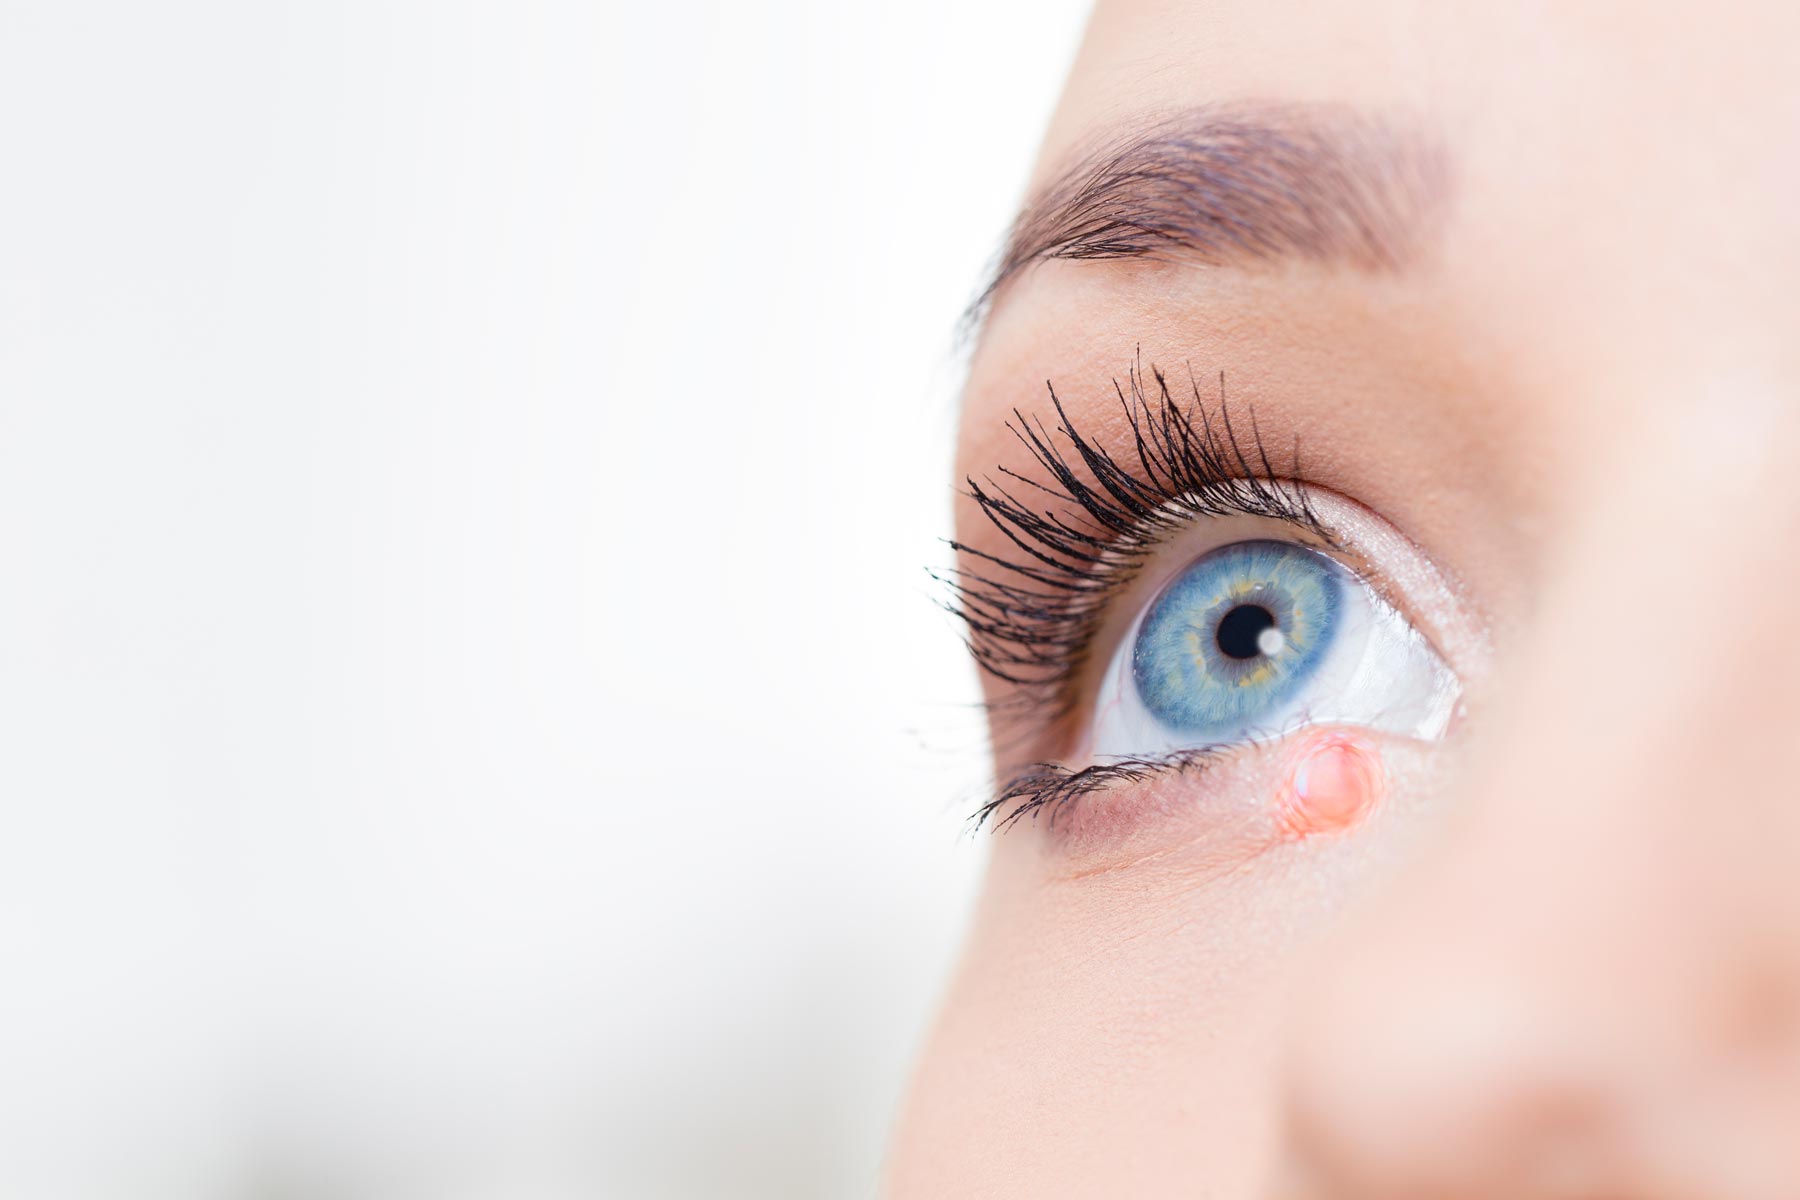 Hordéolo: causas, sintomas e tratamentos - Clínica de Olhos